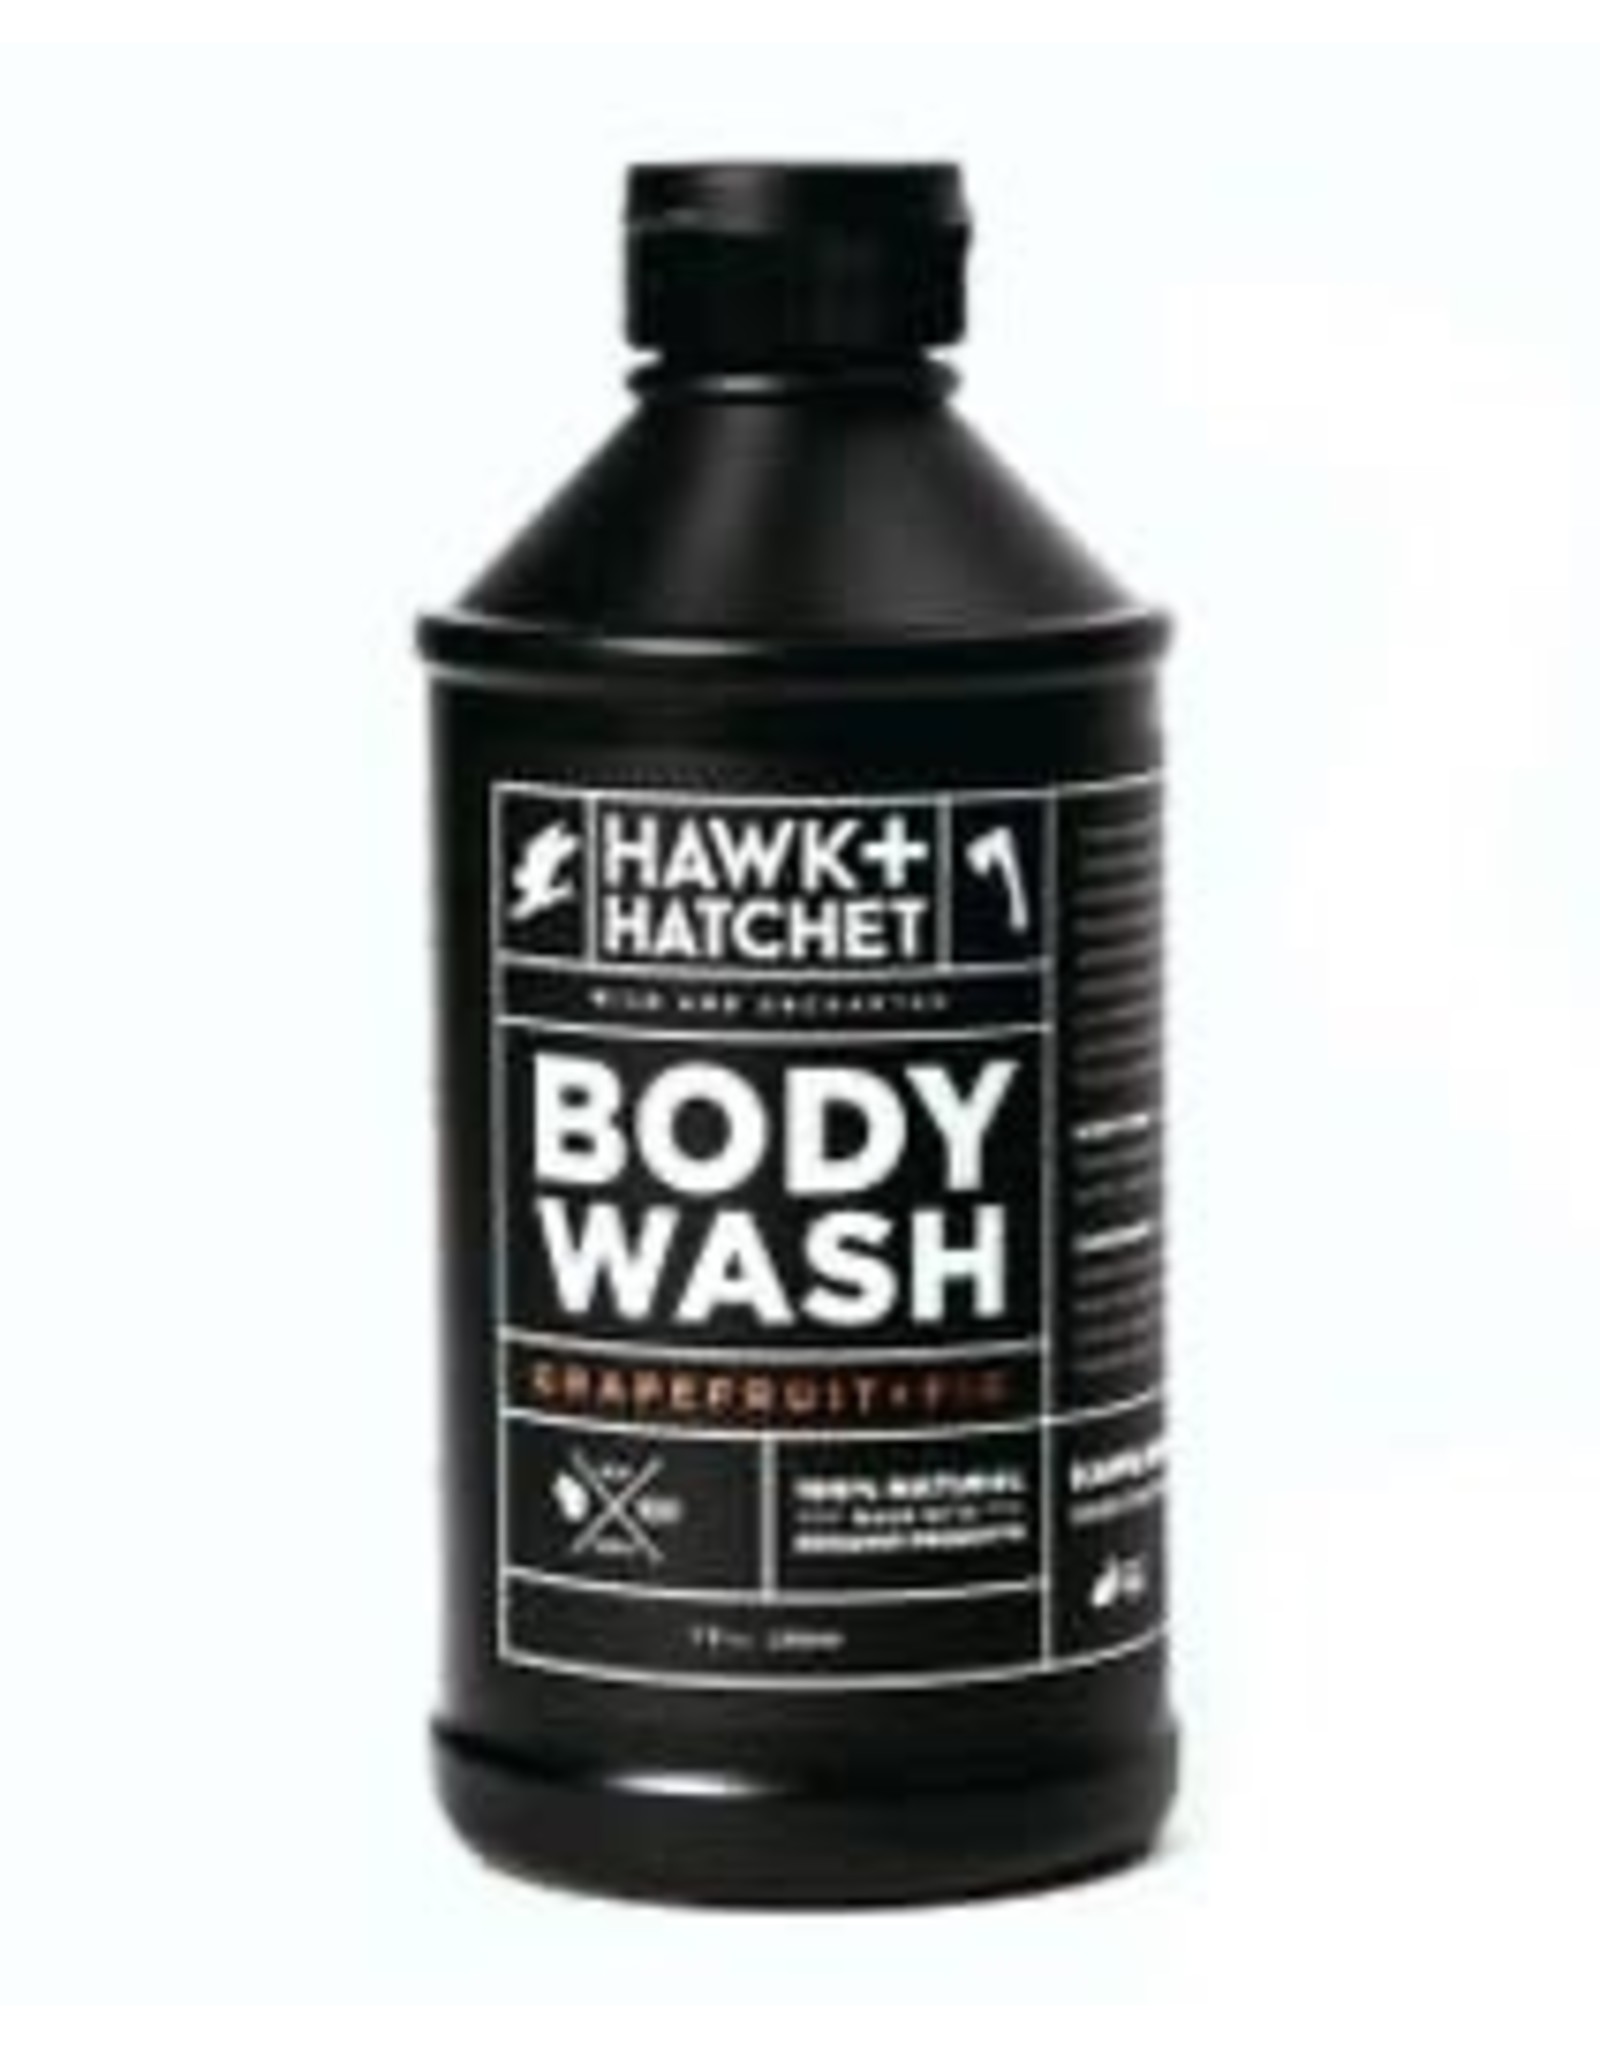 Hawk & Hatchet Body Wash - Grapefruit & Fir - 12oz